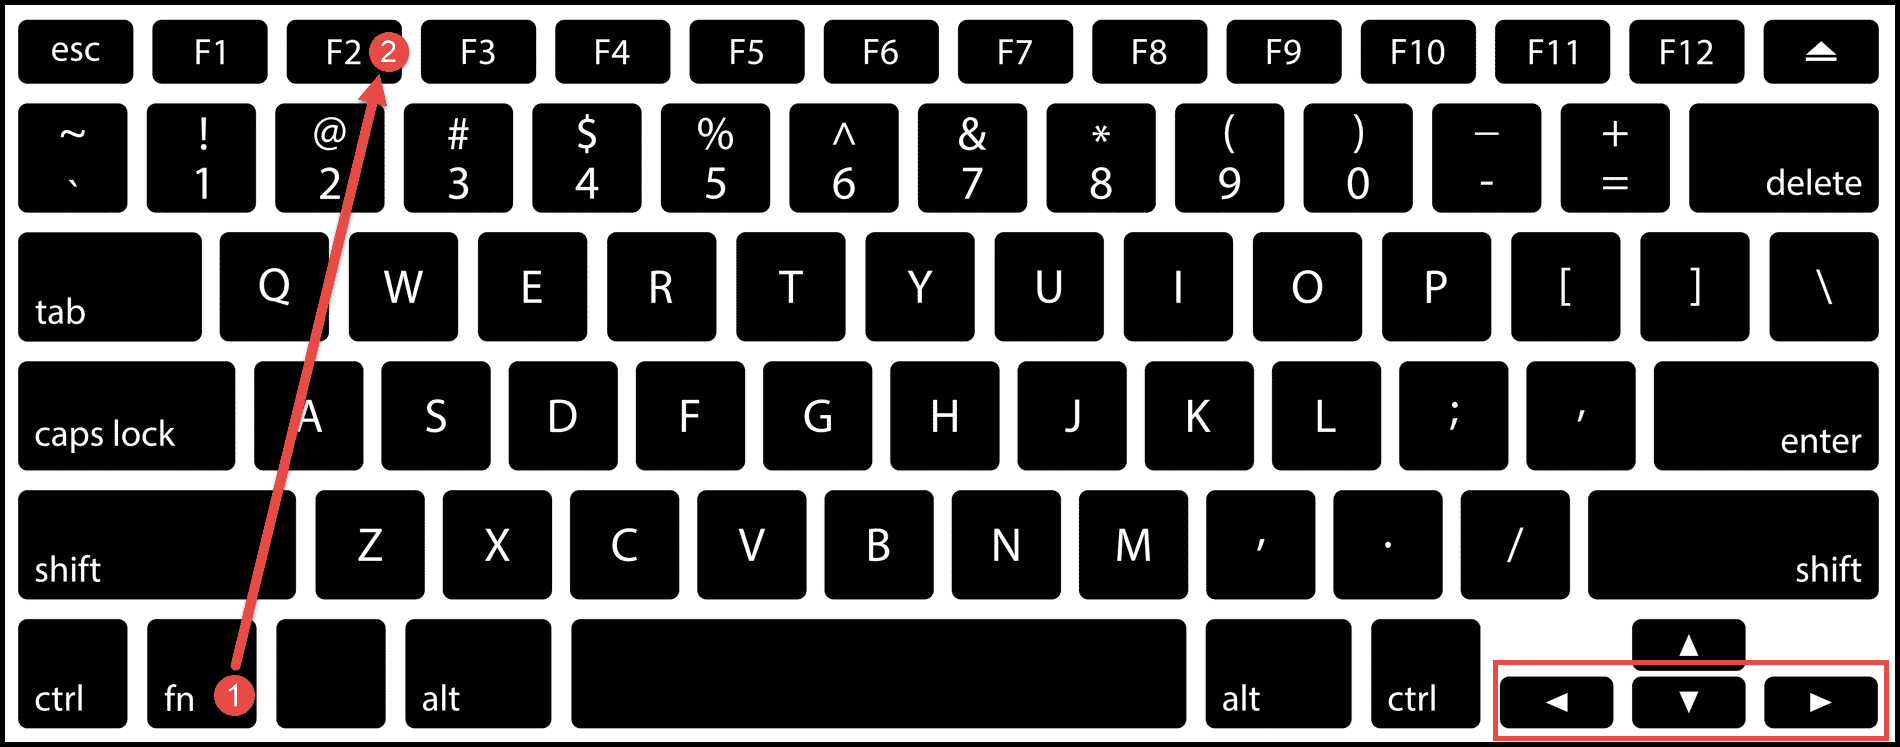 método abreviado de teclado para editar celda